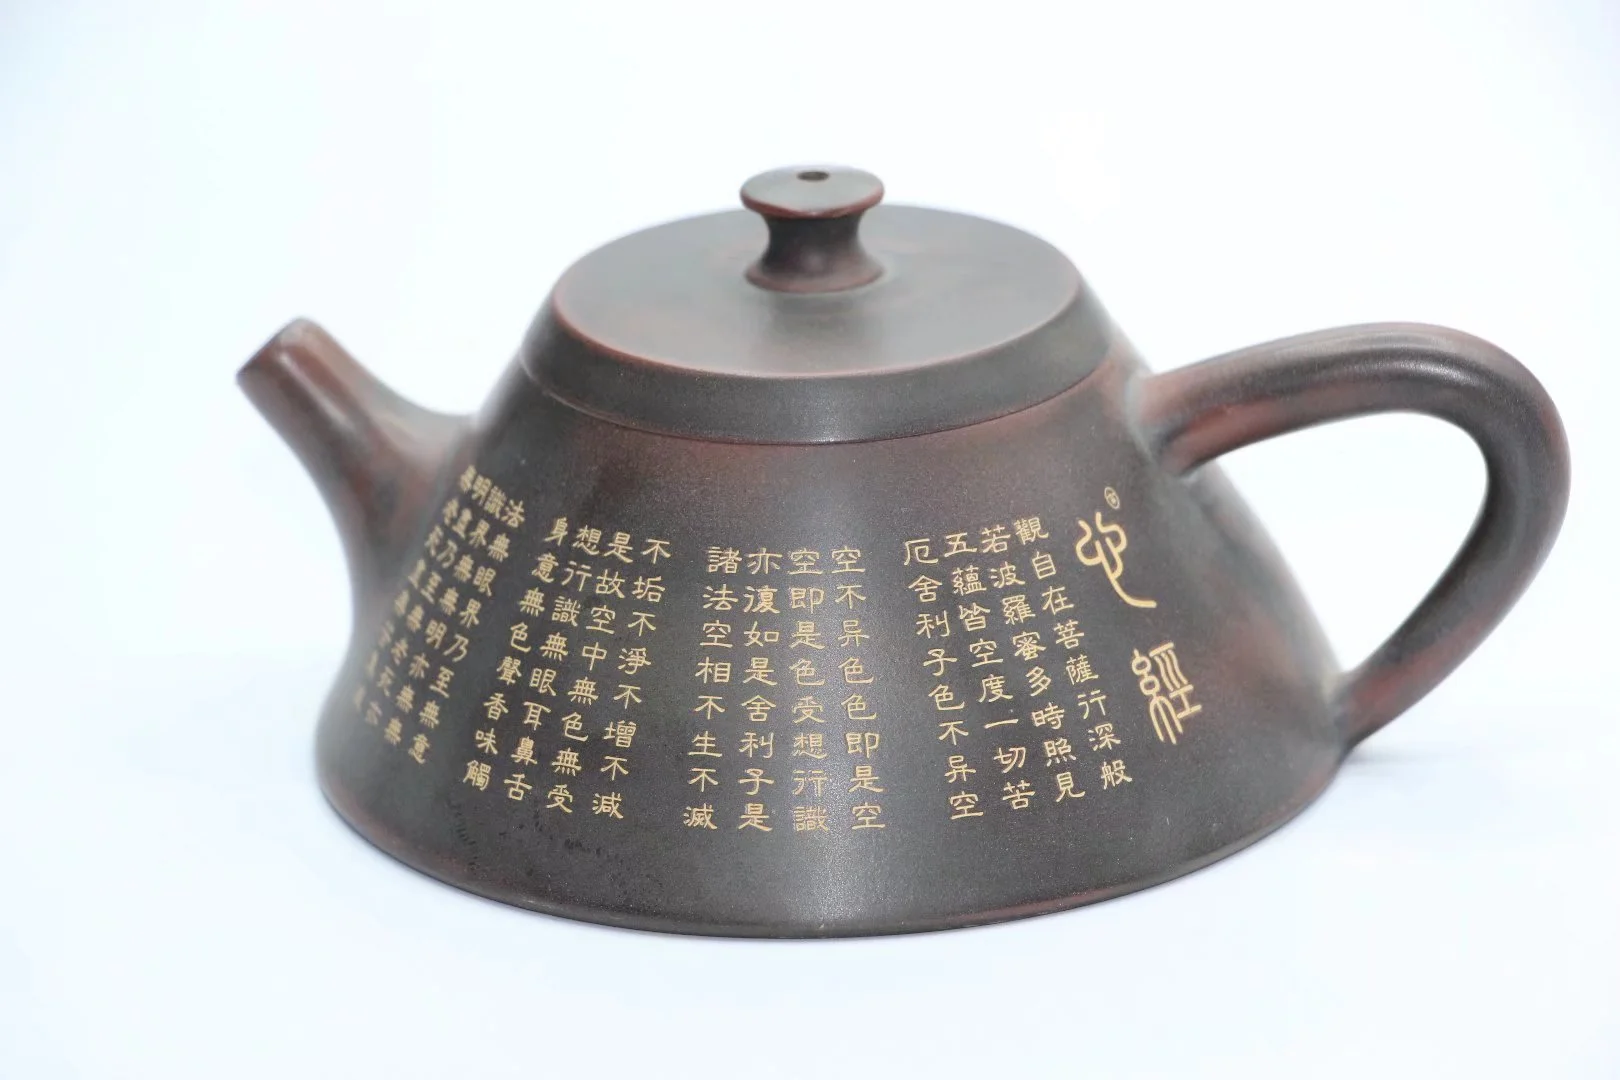 

Qinzhou Ceramic qin zhou ni xing tao pu er tea pot for puer green oolong gaba black tea (No yixing) SHI PIAO about 150ml